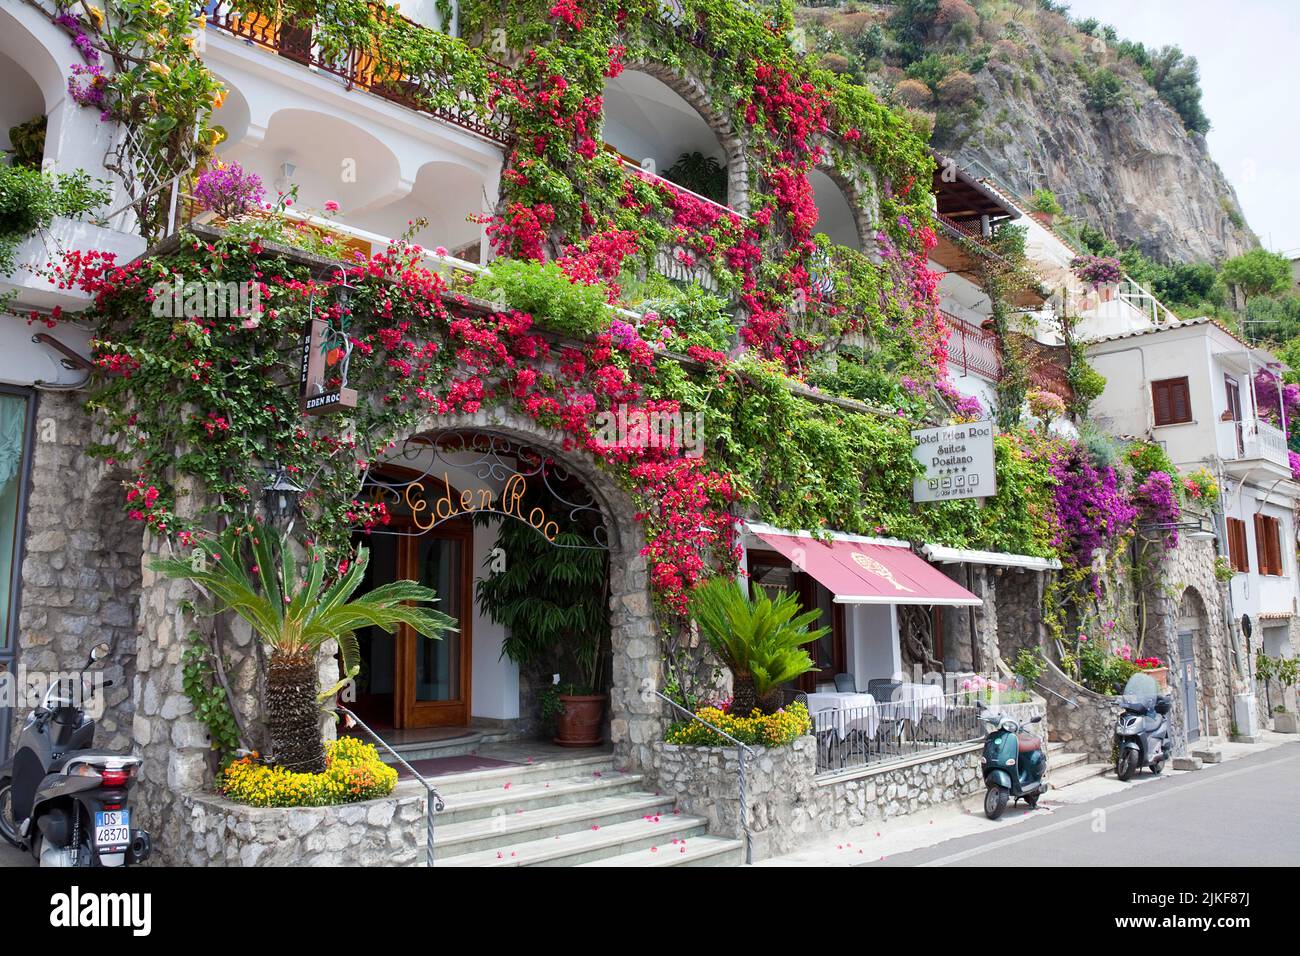 Le petit hôtel Eden Roc au village de pêcheurs de Positano, côte amalfitaine, site classé au patrimoine mondial de l'UNESCO, Campanie, Italie, mer Méditerranée, Europe Banque D'Images